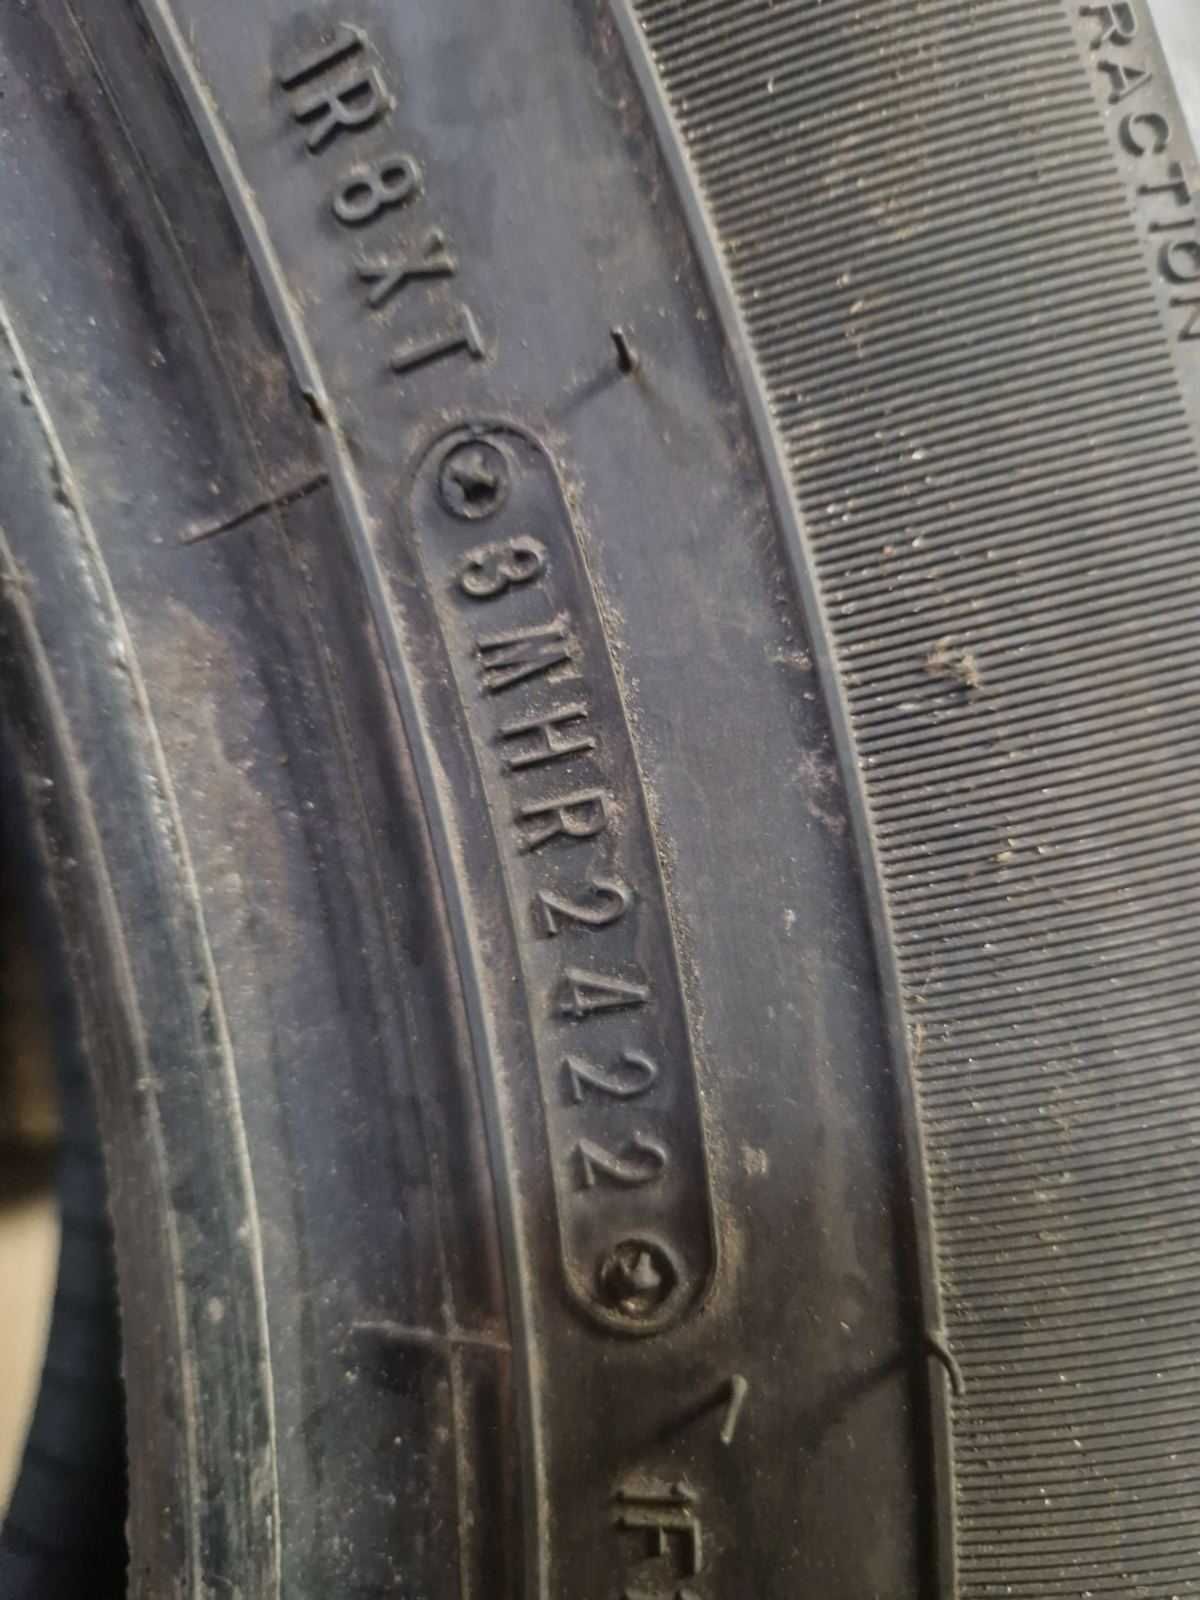 4 Dunlop R18 265/60/ Дънлоп
нови летни гуми 
DOT2422